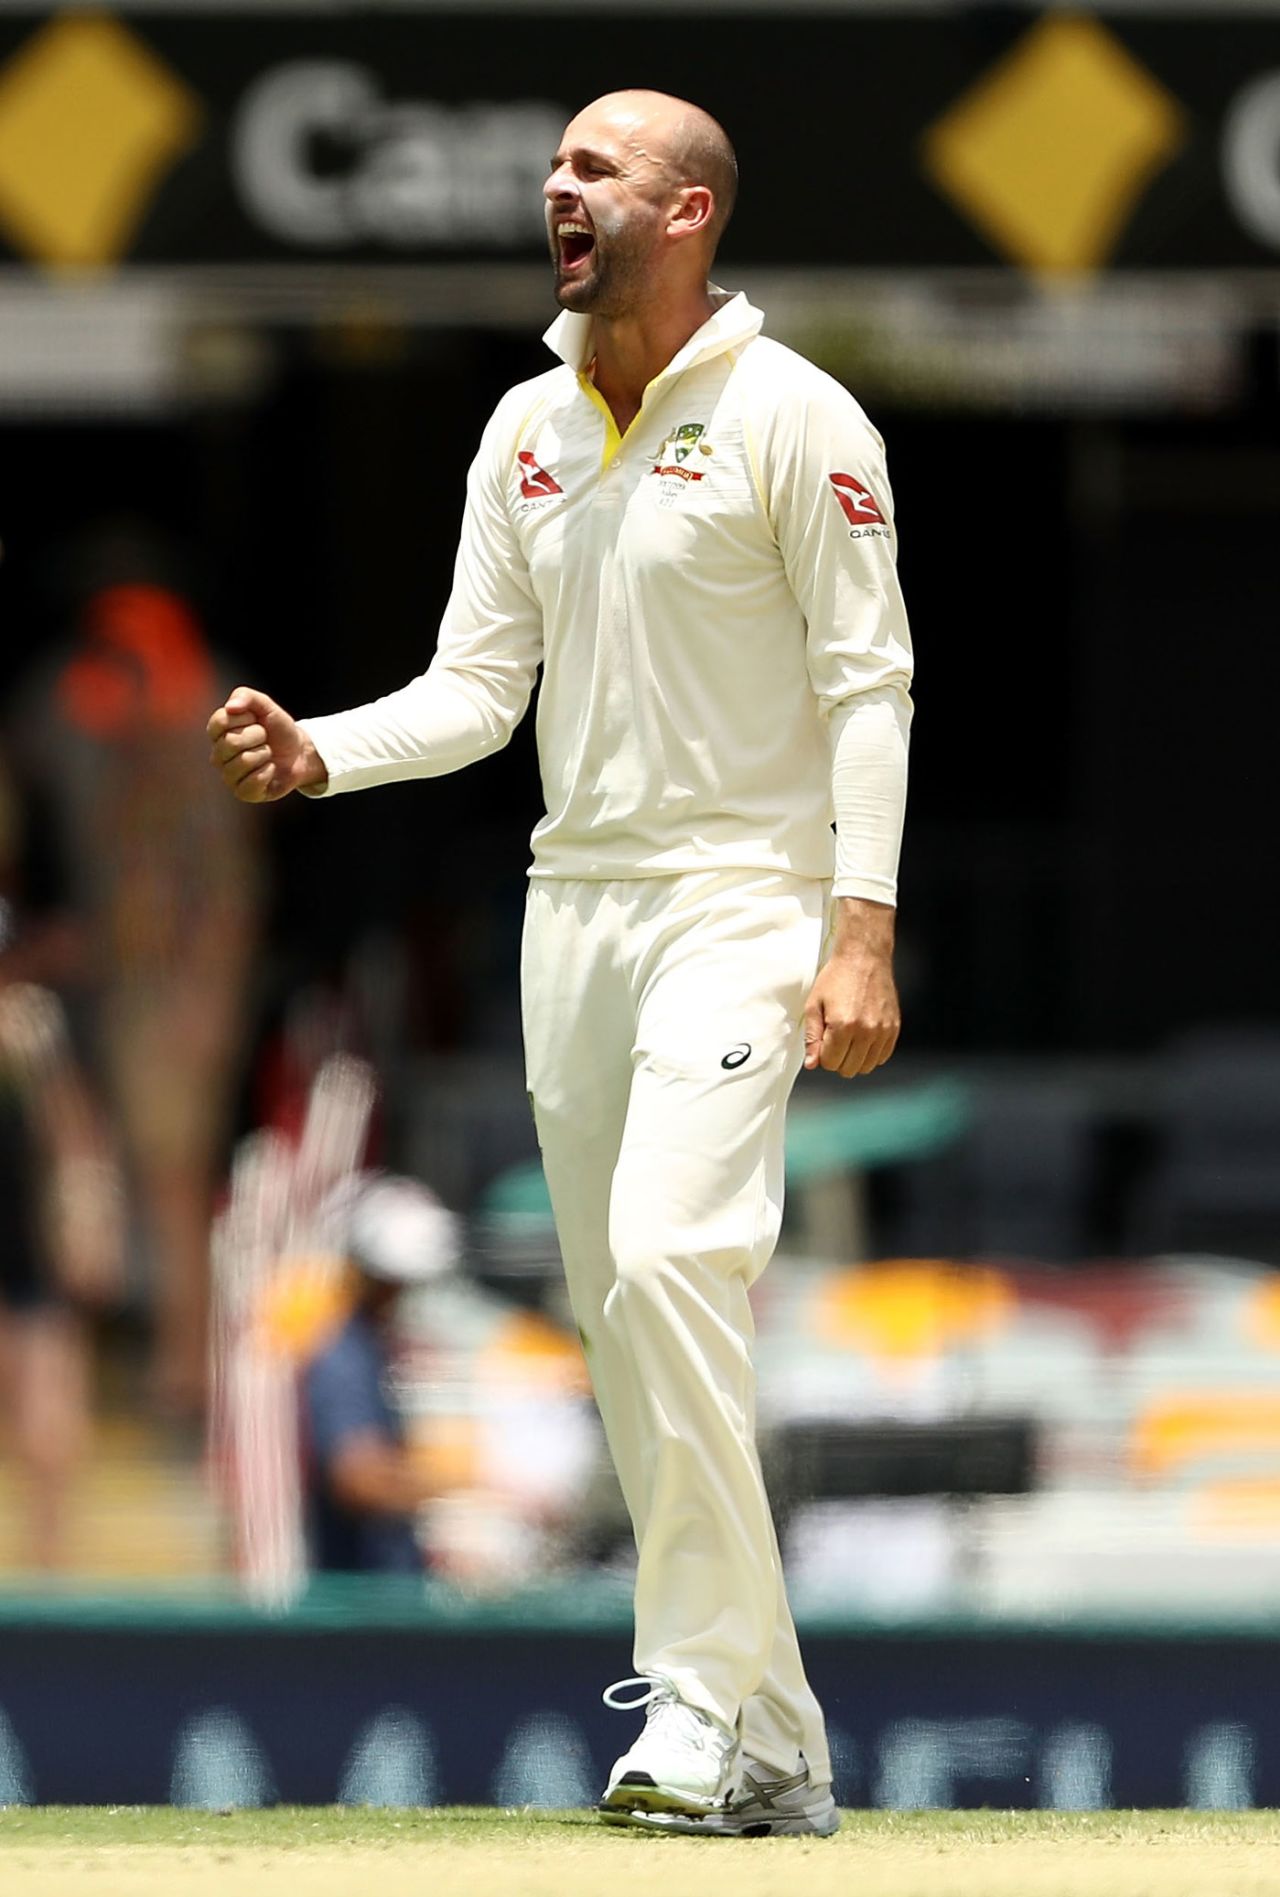 Nathan Lyon earned reward for his impressive display, Australia v England, 1st Test, Brisbane, 2nd day, November 24, 2017